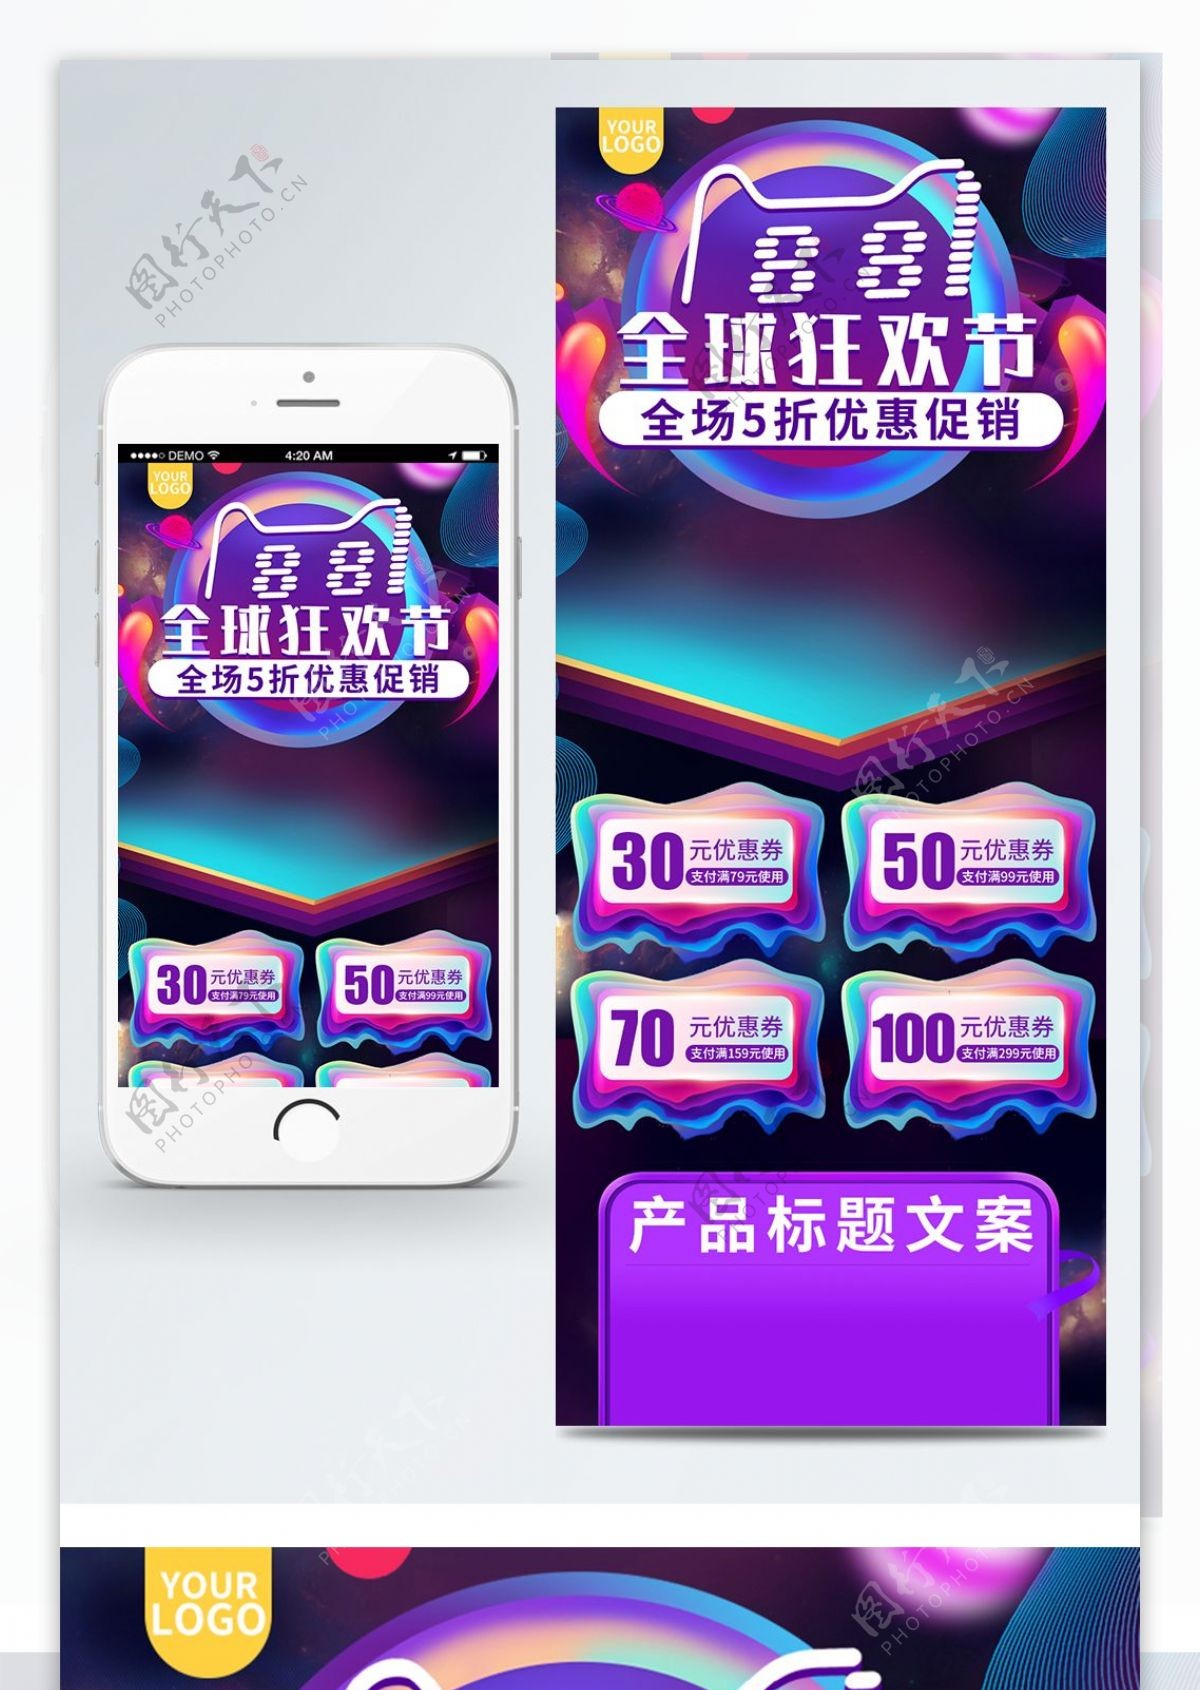 紫色欧普风88全球狂欢节促销手机端首页